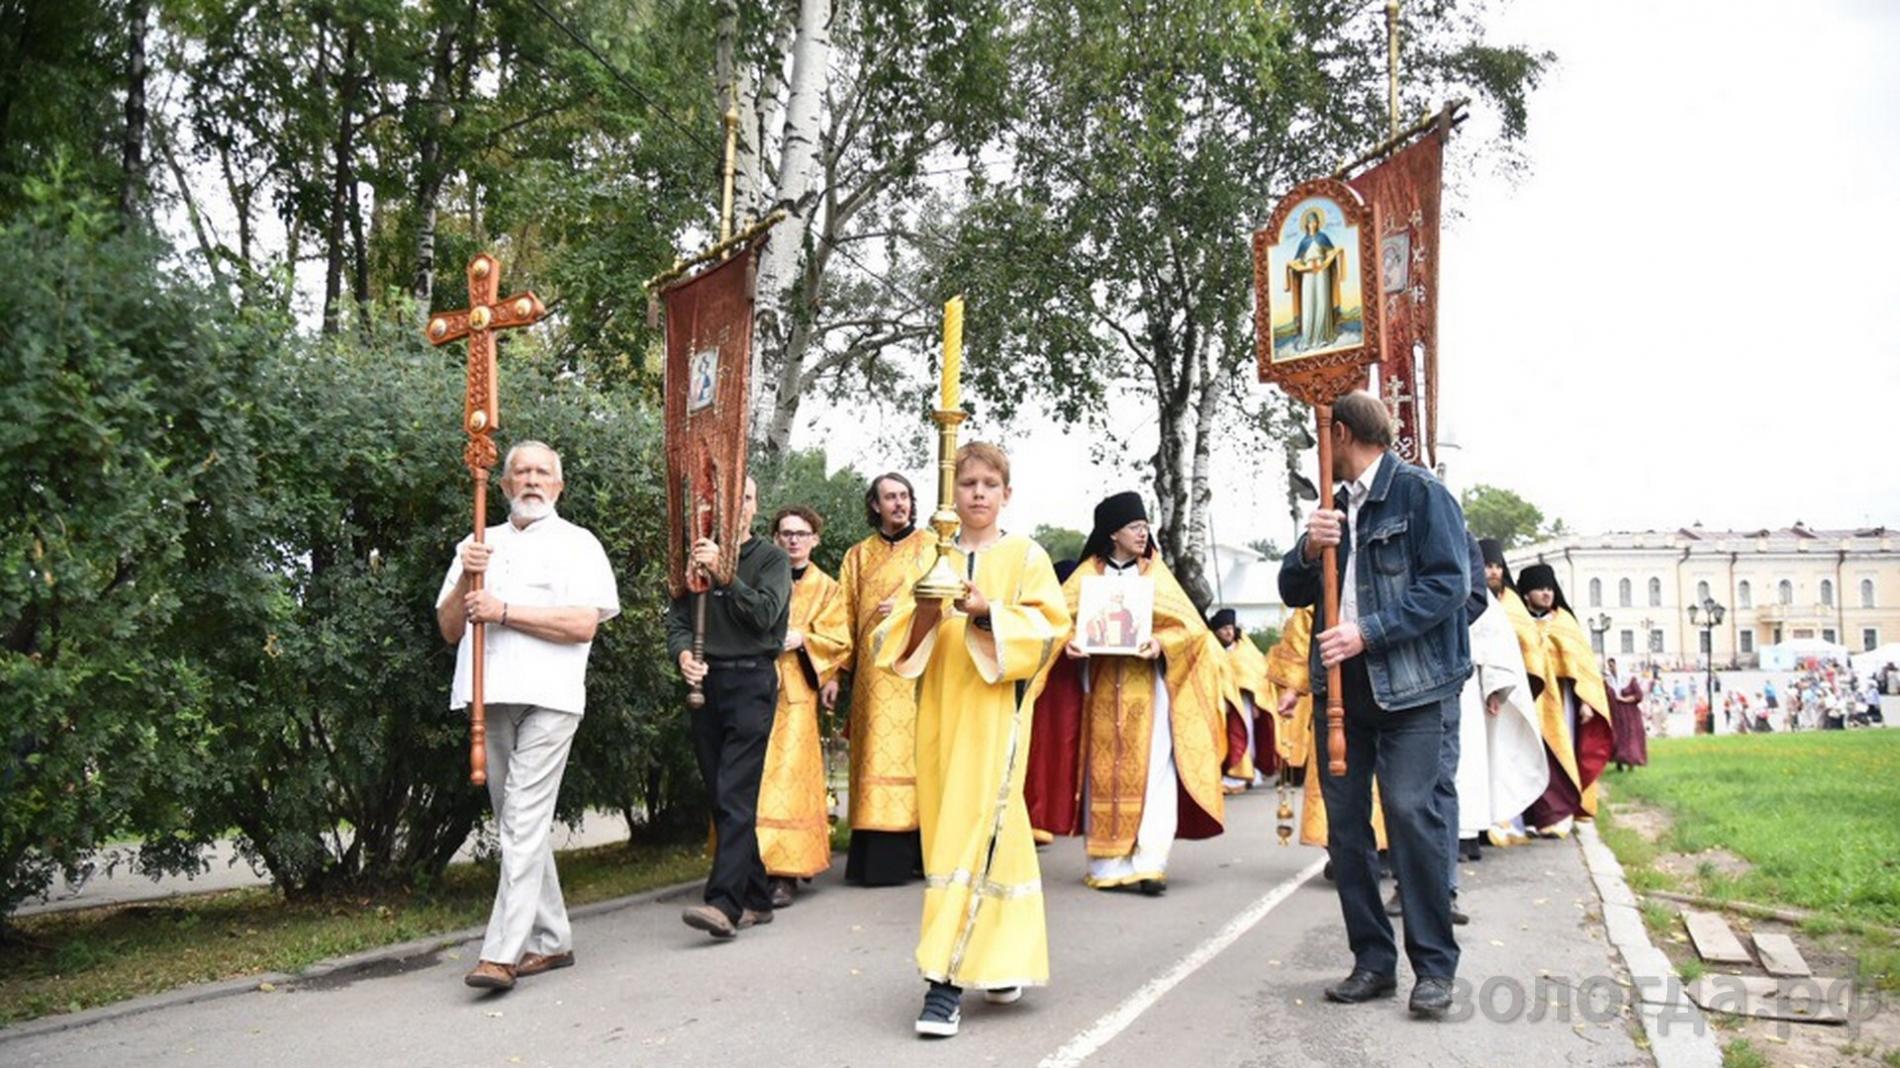 Крестный ход в памяти святых пройдет в Вологде (6+)